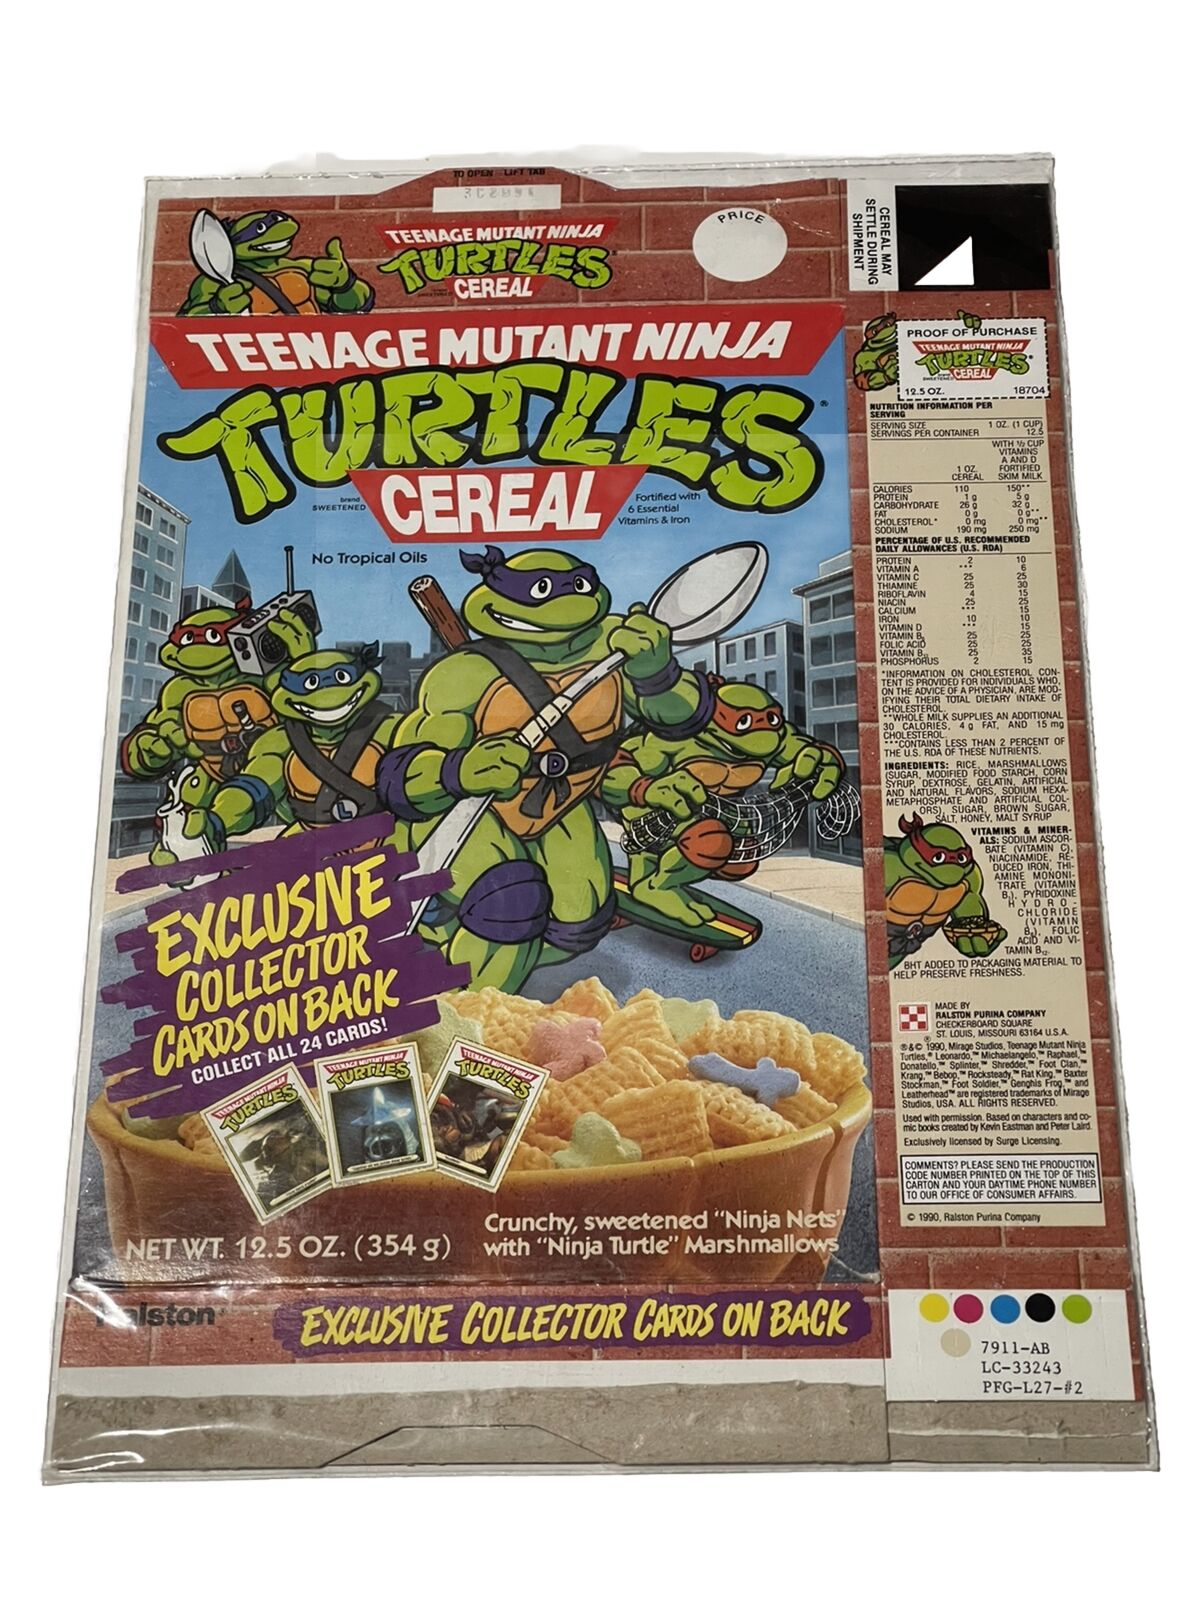 1990 Ralston TEENAGE MUTANT NINJA TURTLES Cereal Box W/ Uncut Cards On Back